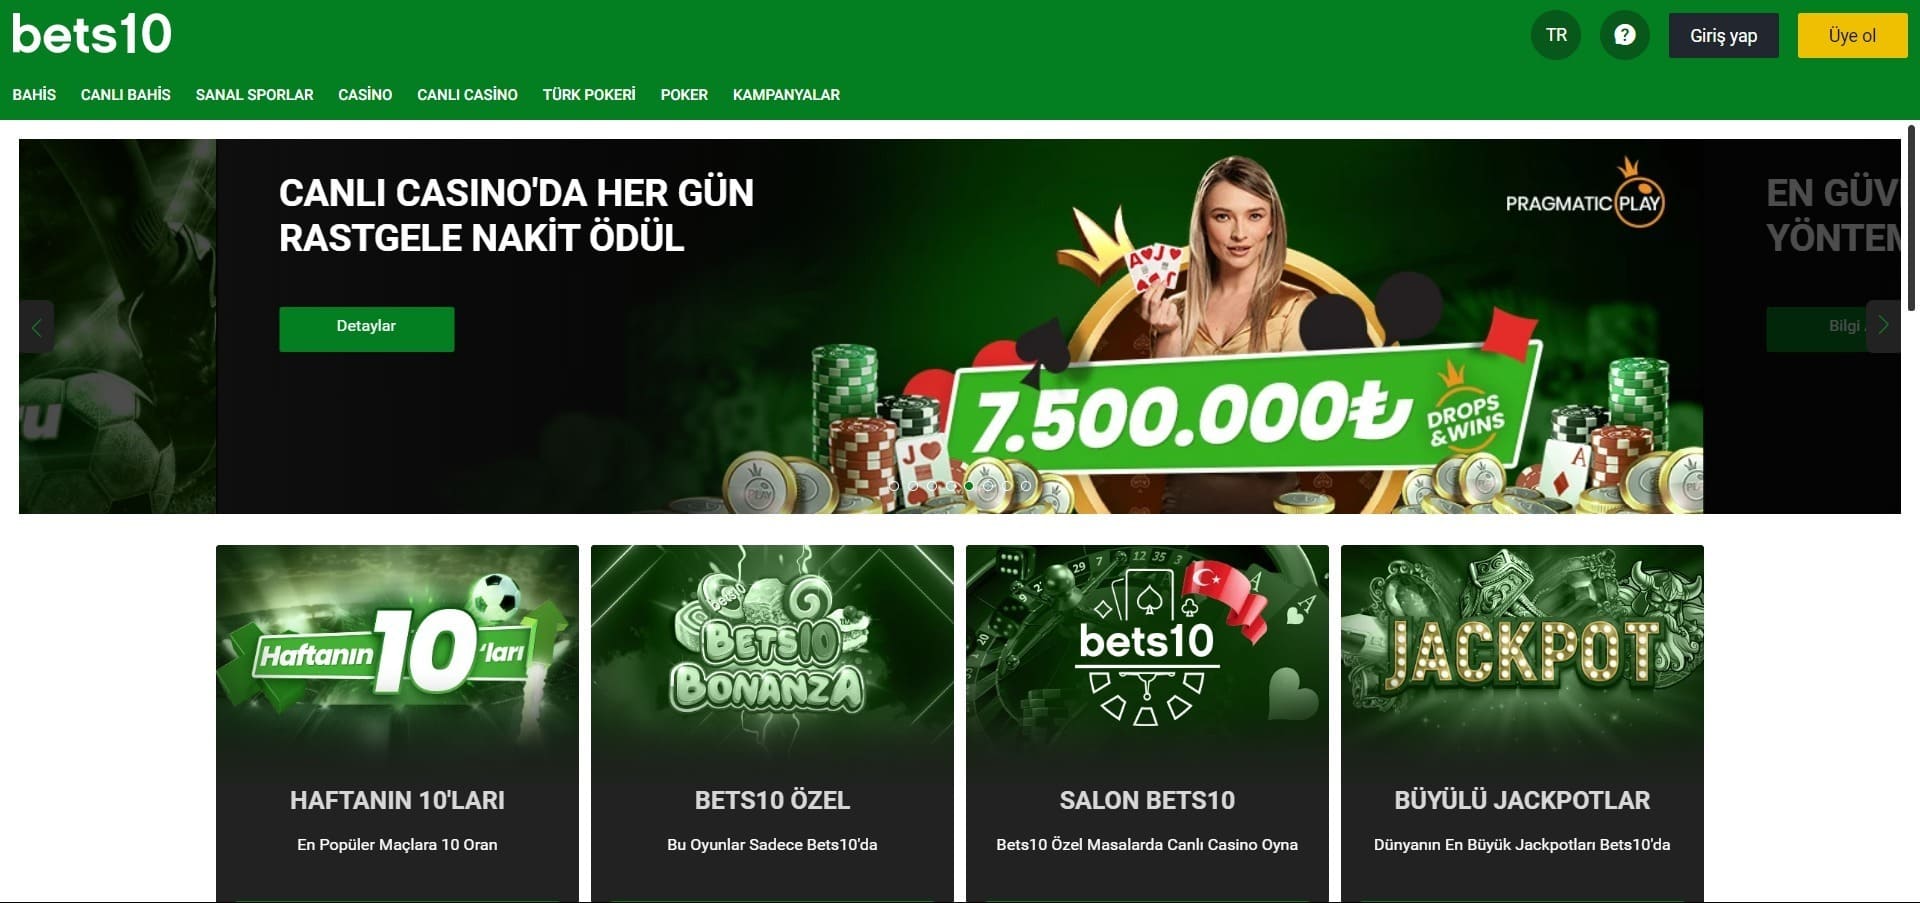 Bets10 Casino'nun resmi web sitesi